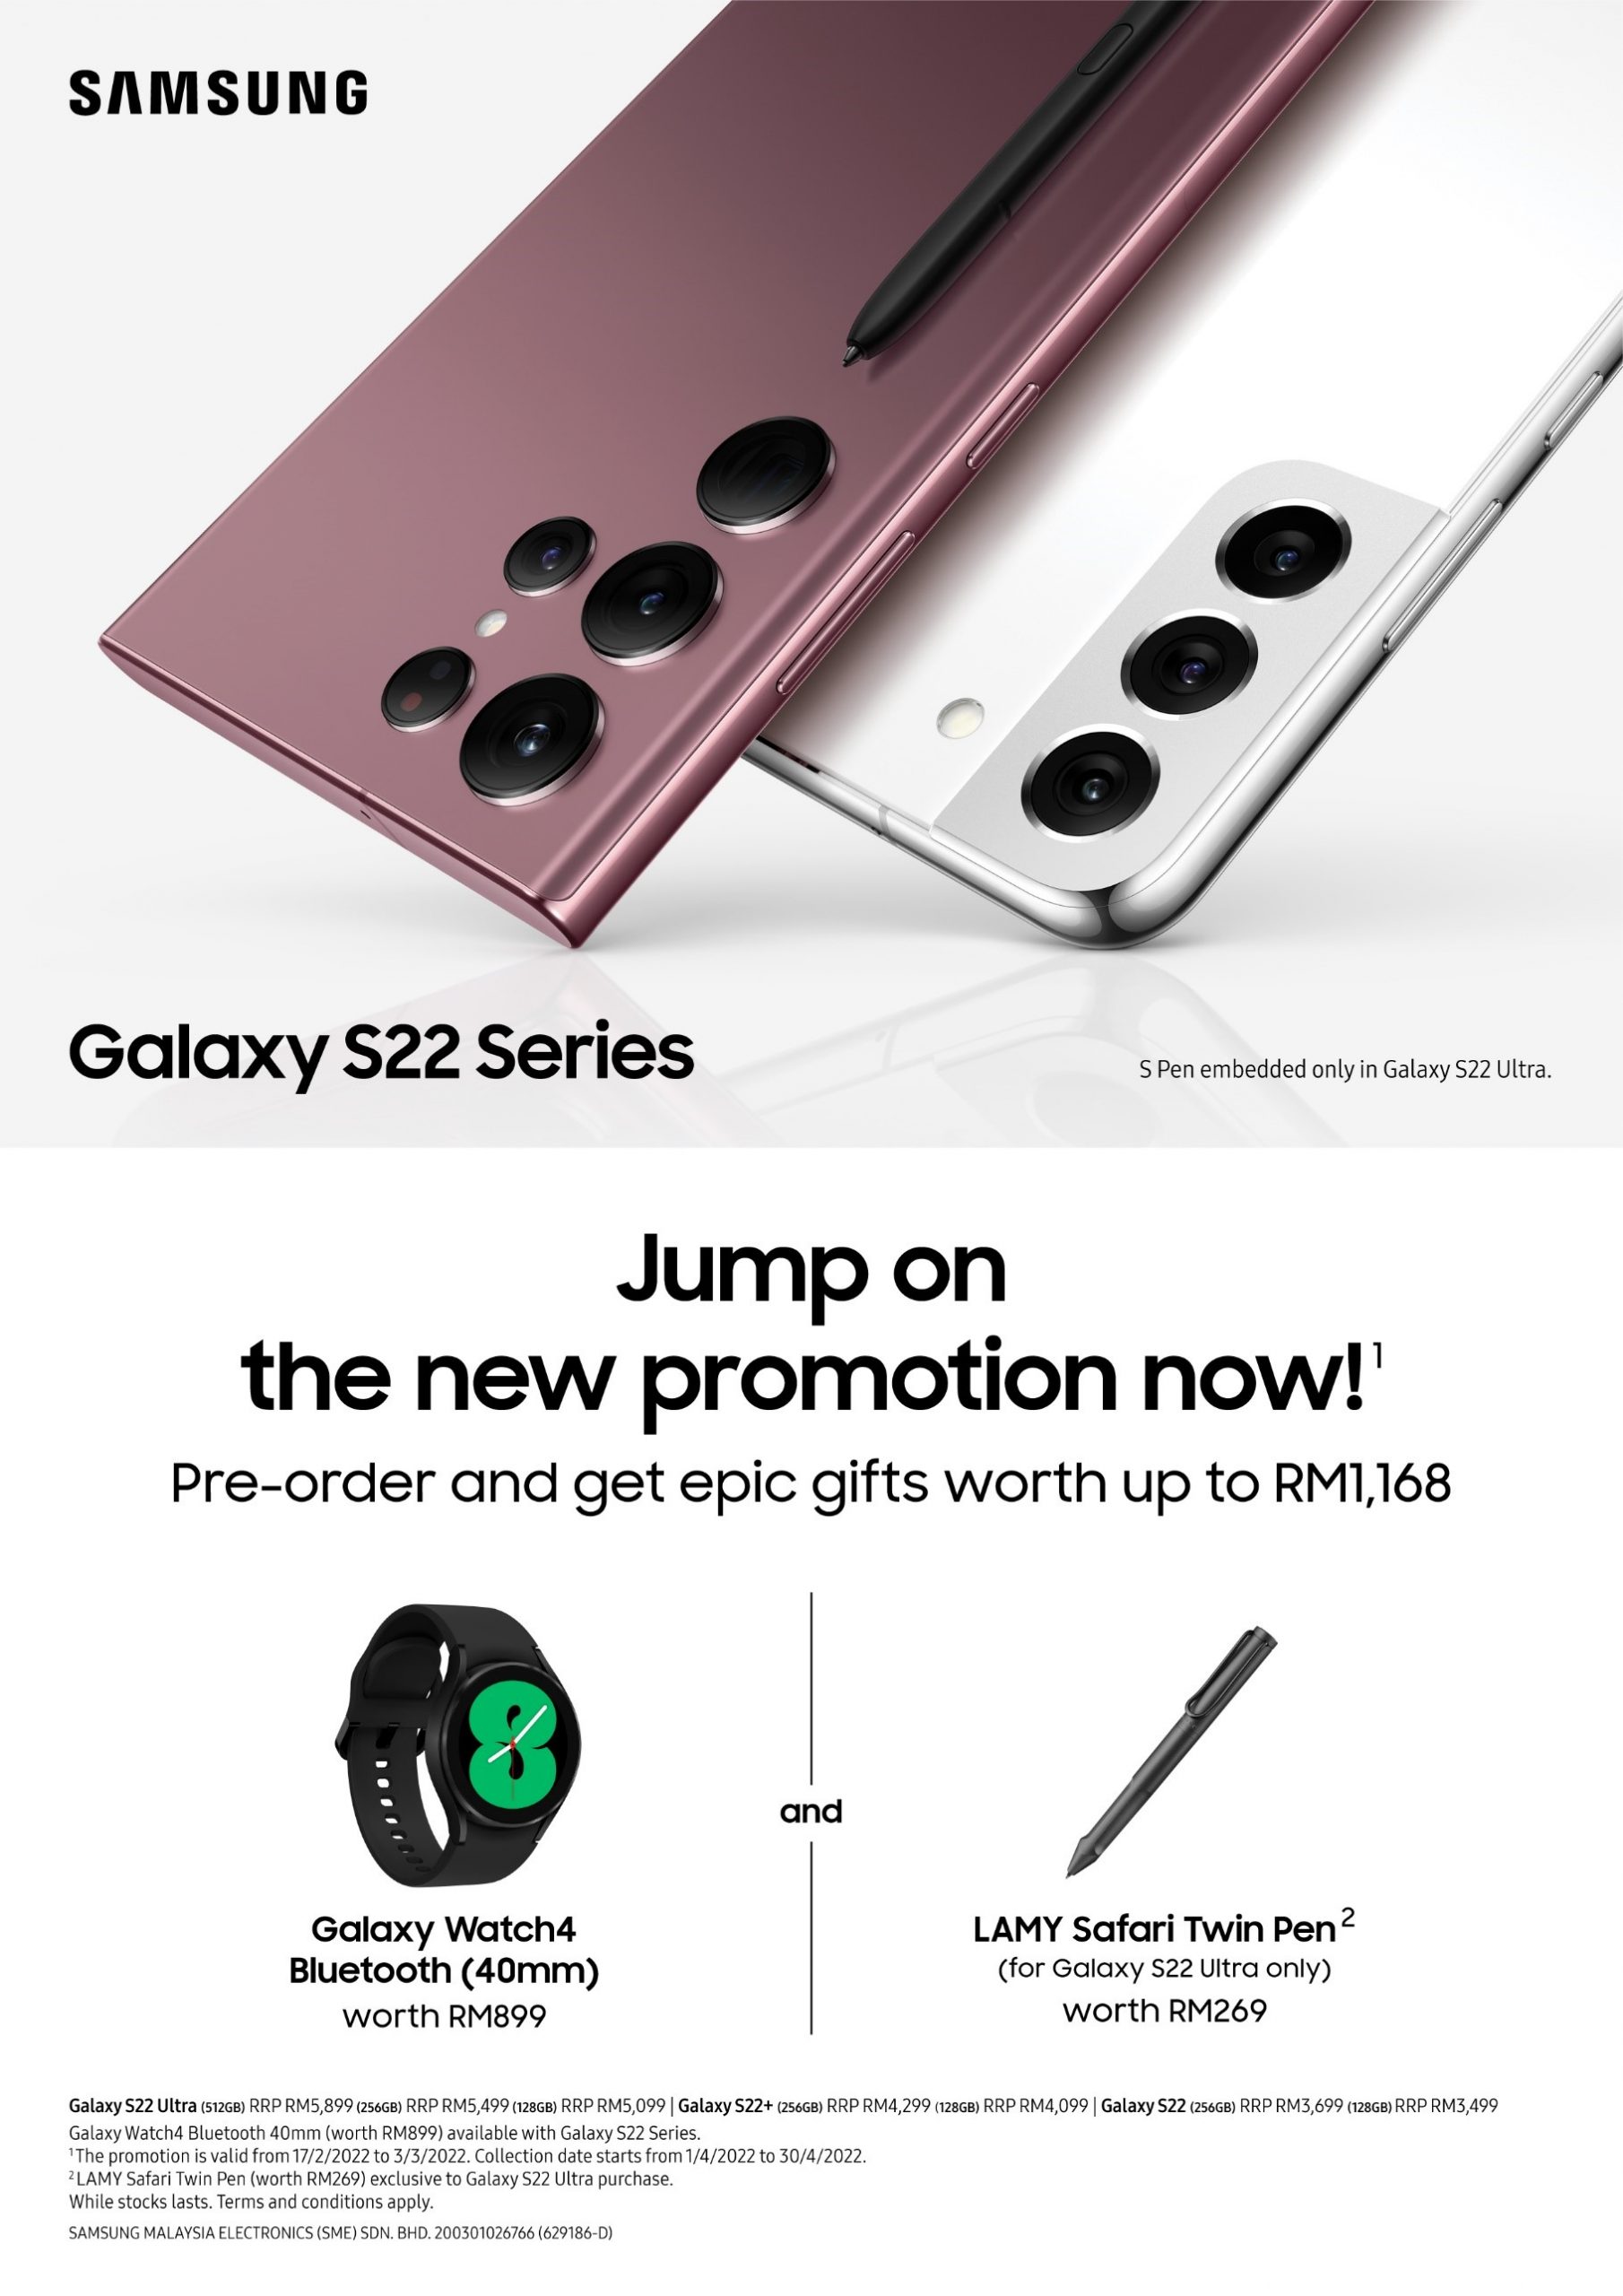 預購贈品更新：現下訂 Samsung Galaxy S22 系列可獲價值最高 RM1,168 贈品；直接贈送 Galaxy Watch4！ 1